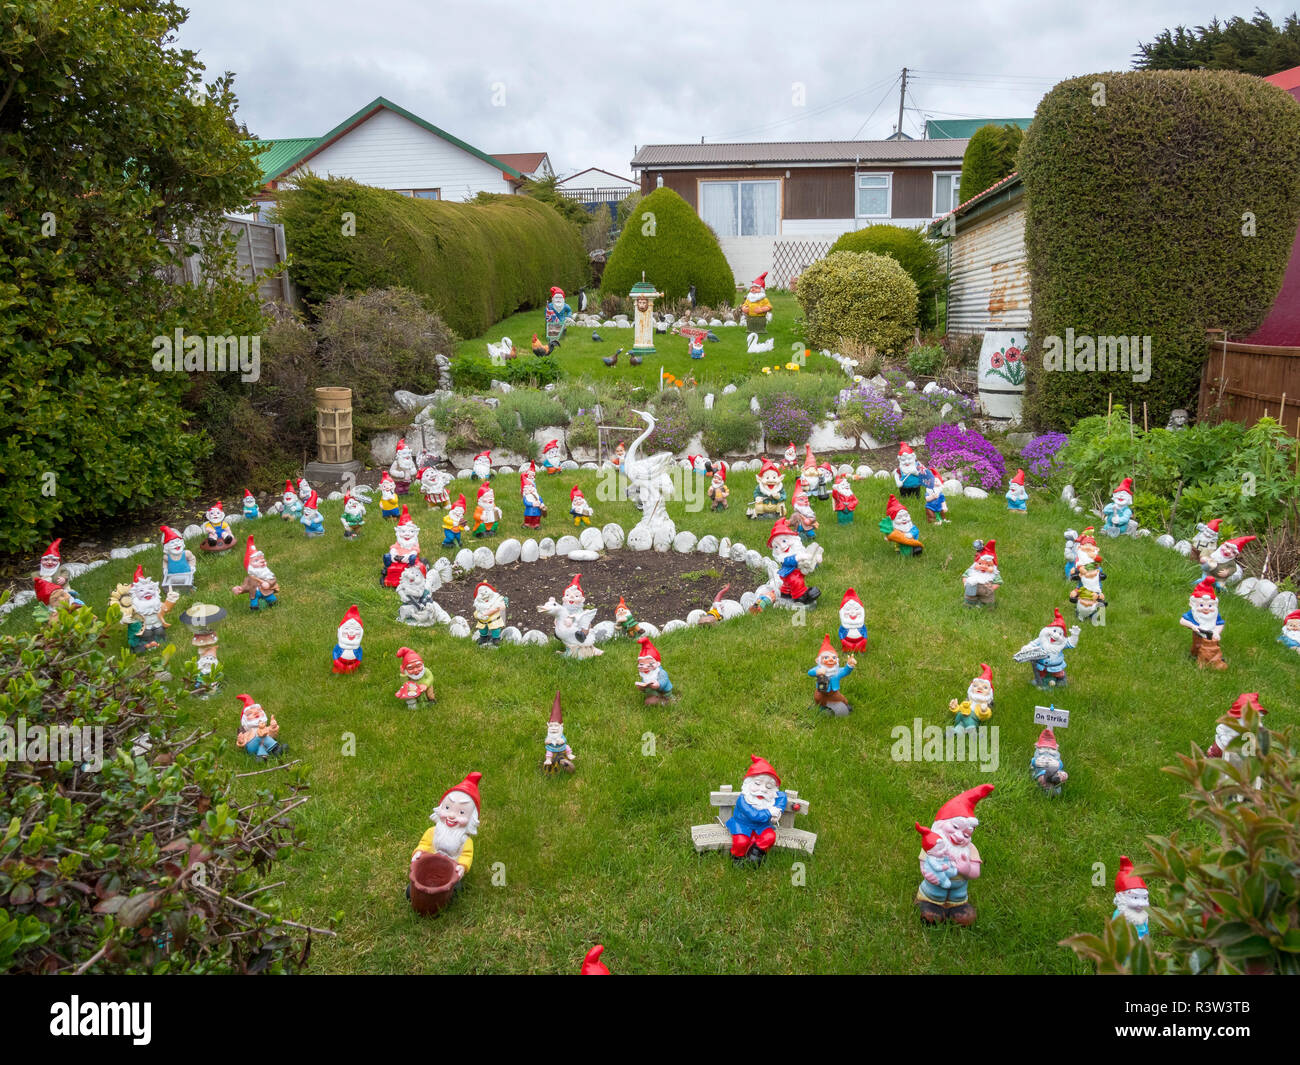 Kay's garden gnome dans les rangs des pionniers dans la vieille ville de Stanley, capitale des îles Malouines. (Usage éditorial uniquement) Banque D'Images